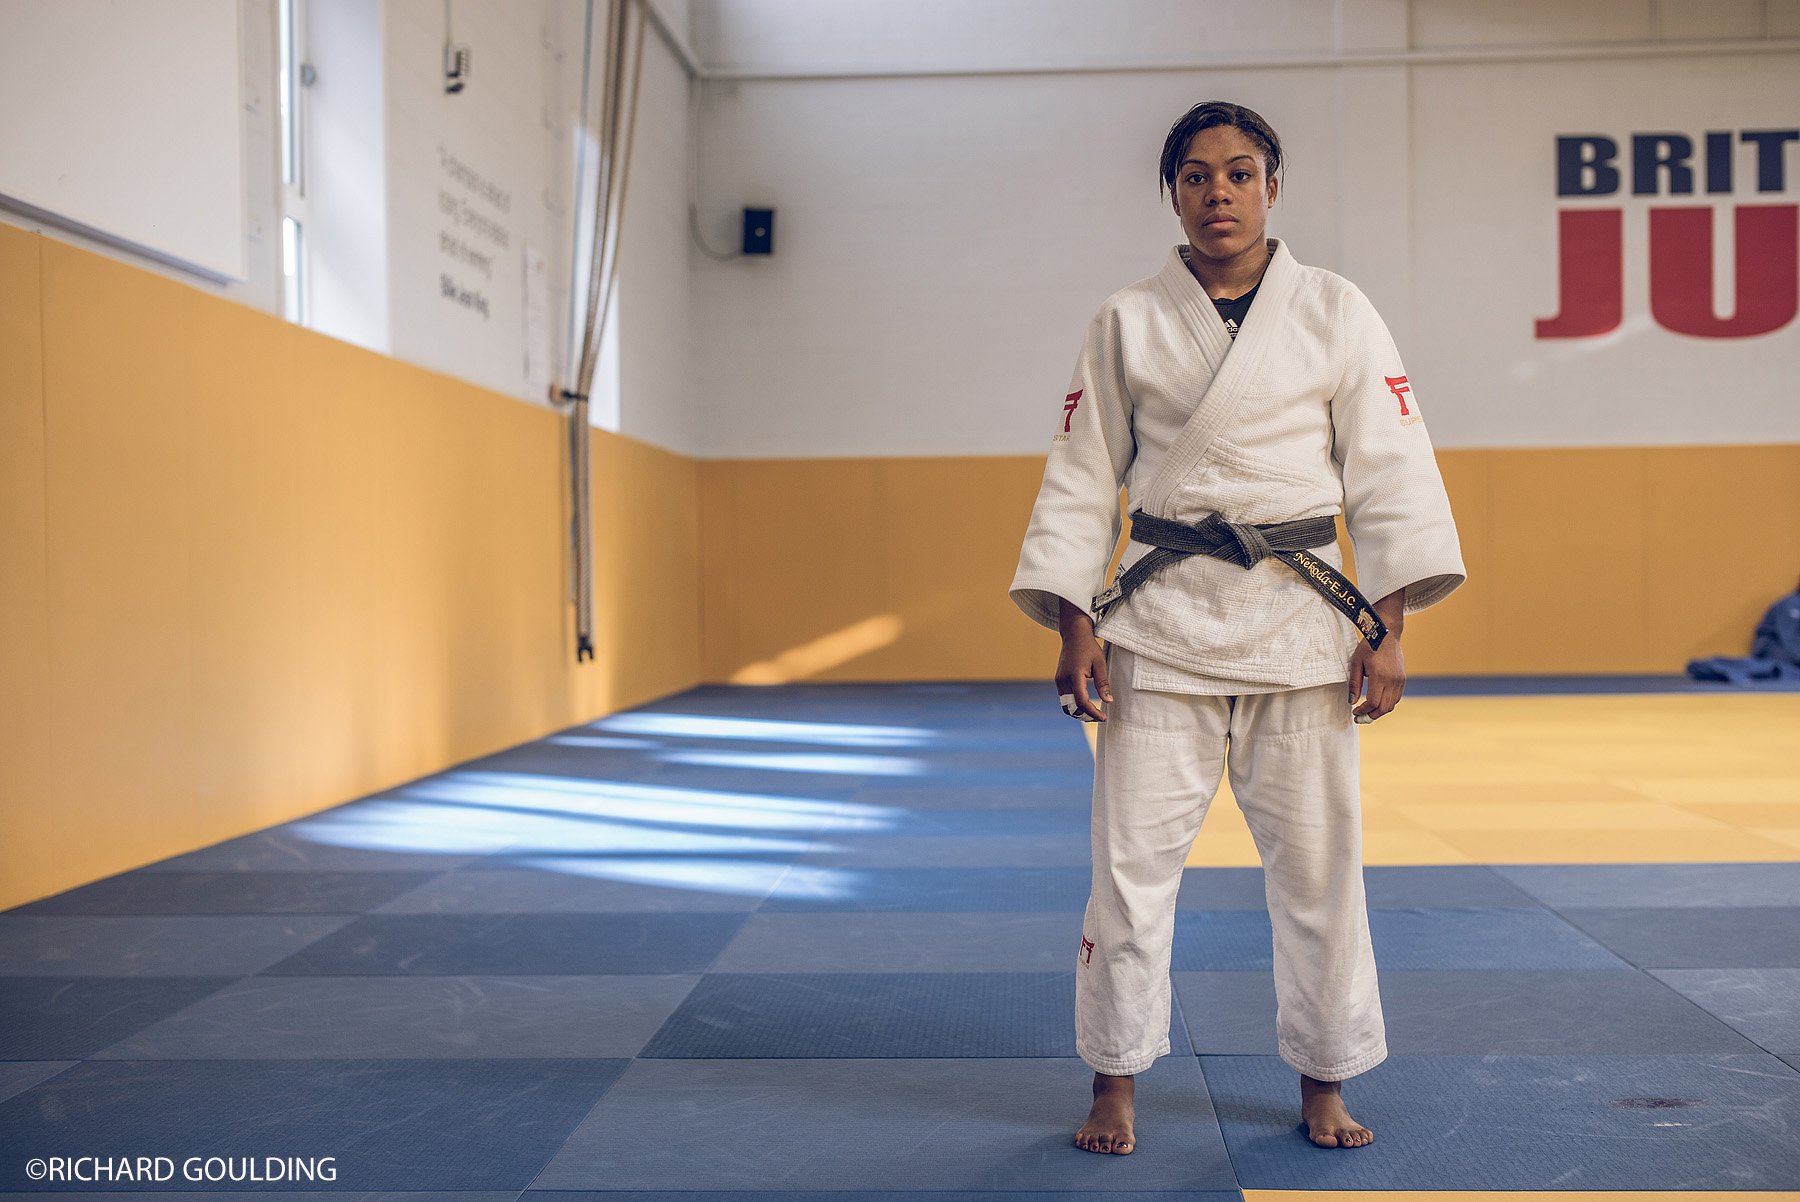  Nekoda Davies, Judo Team GB 